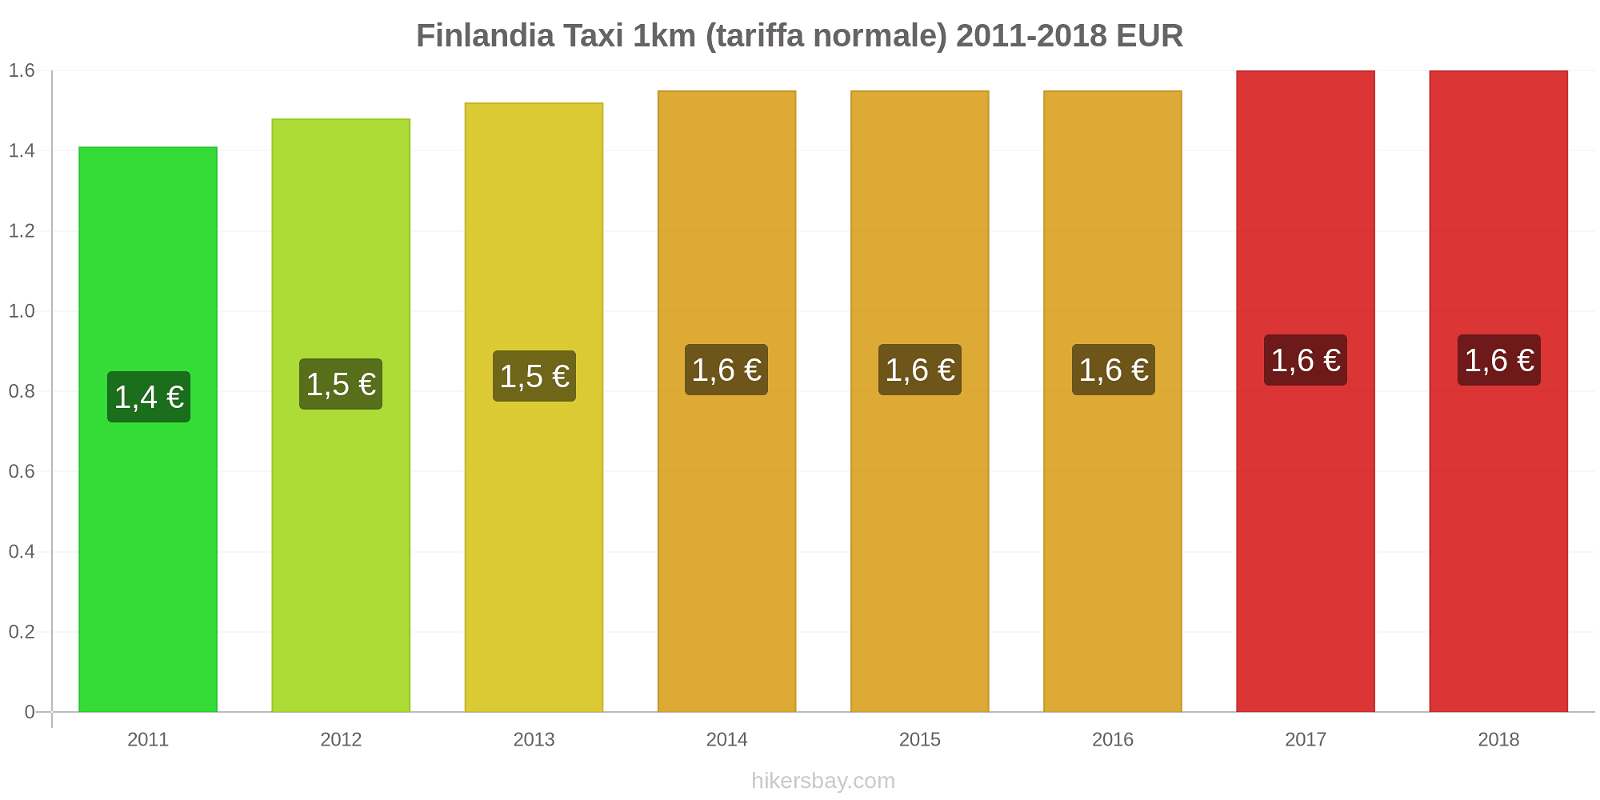 Finlandia cambi di prezzo Taxi 1km (tariffa normale) hikersbay.com